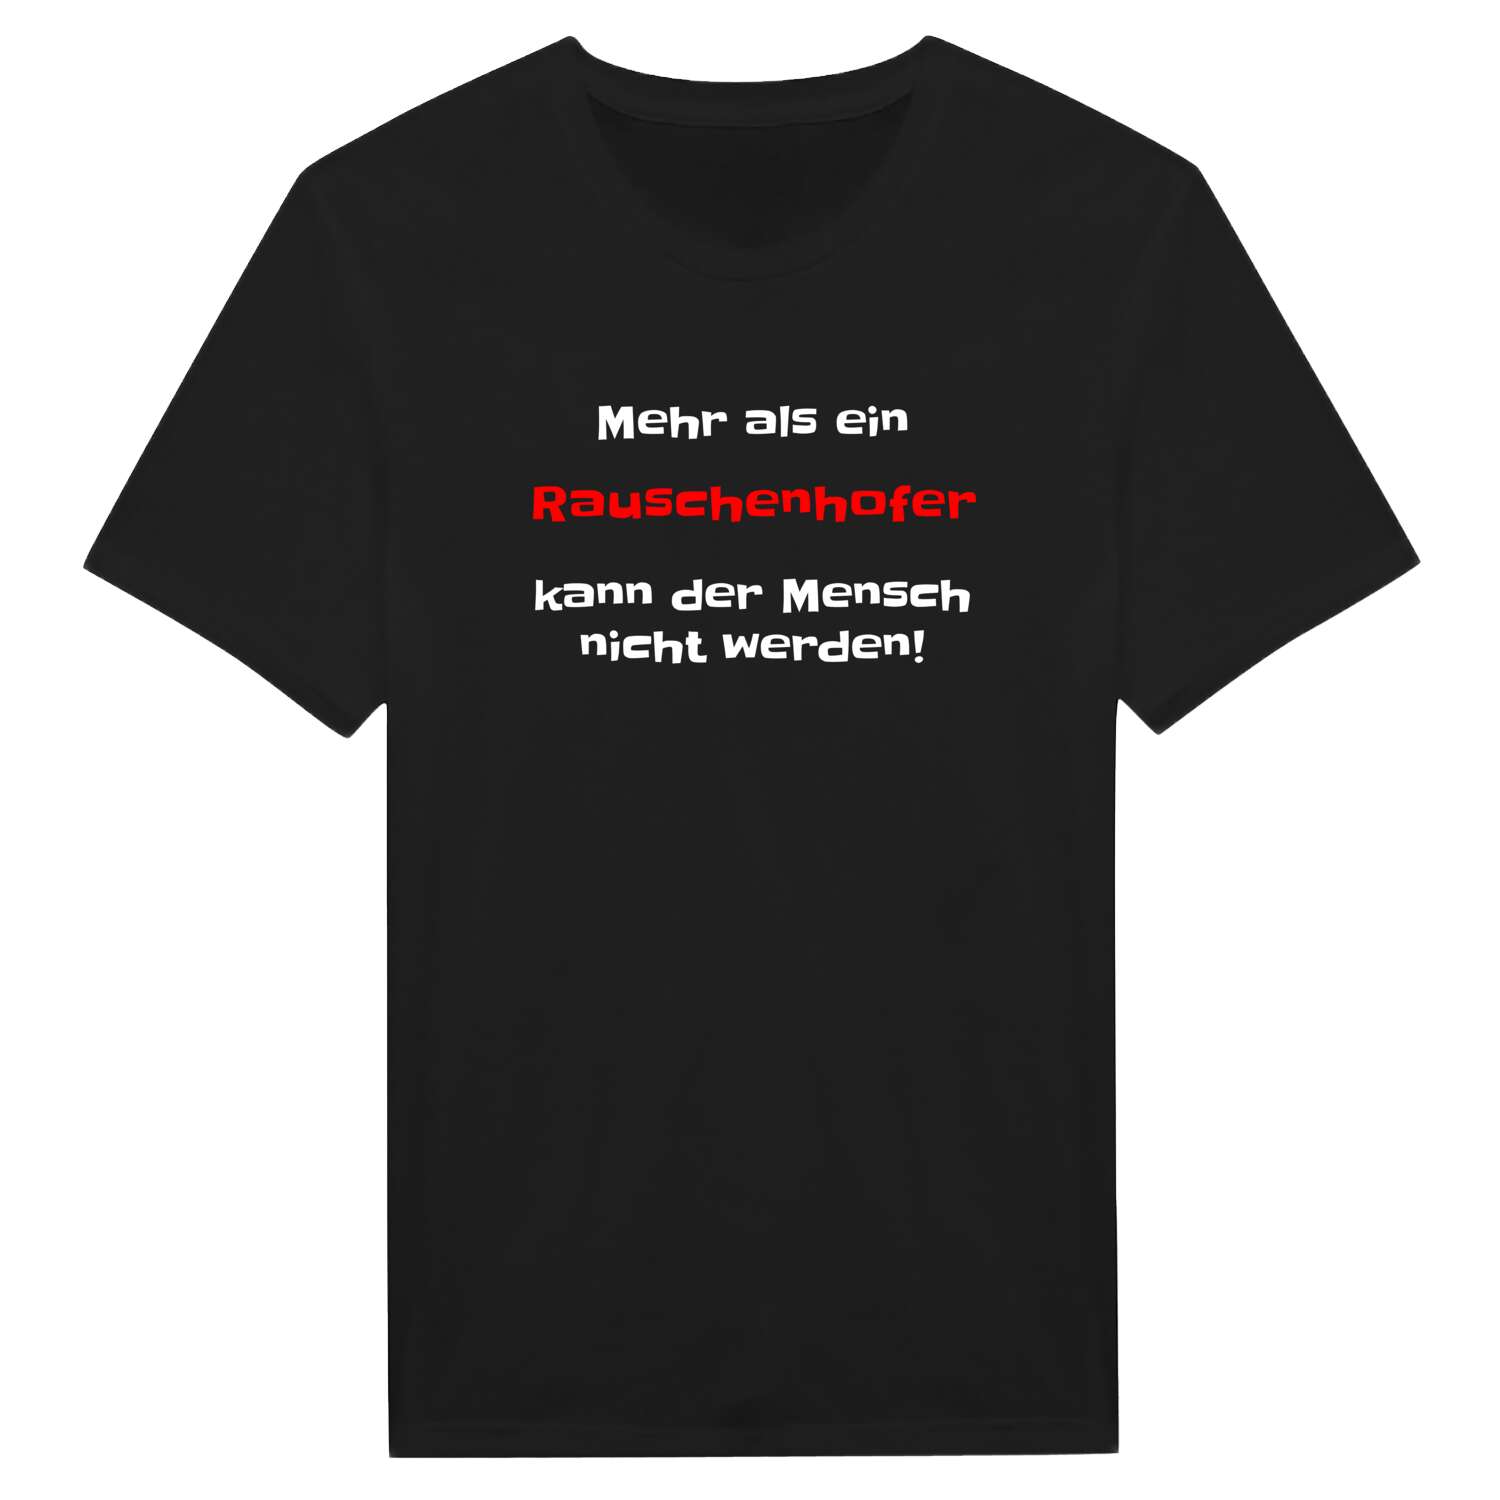 Rauschenhof T-Shirt »Mehr als ein«